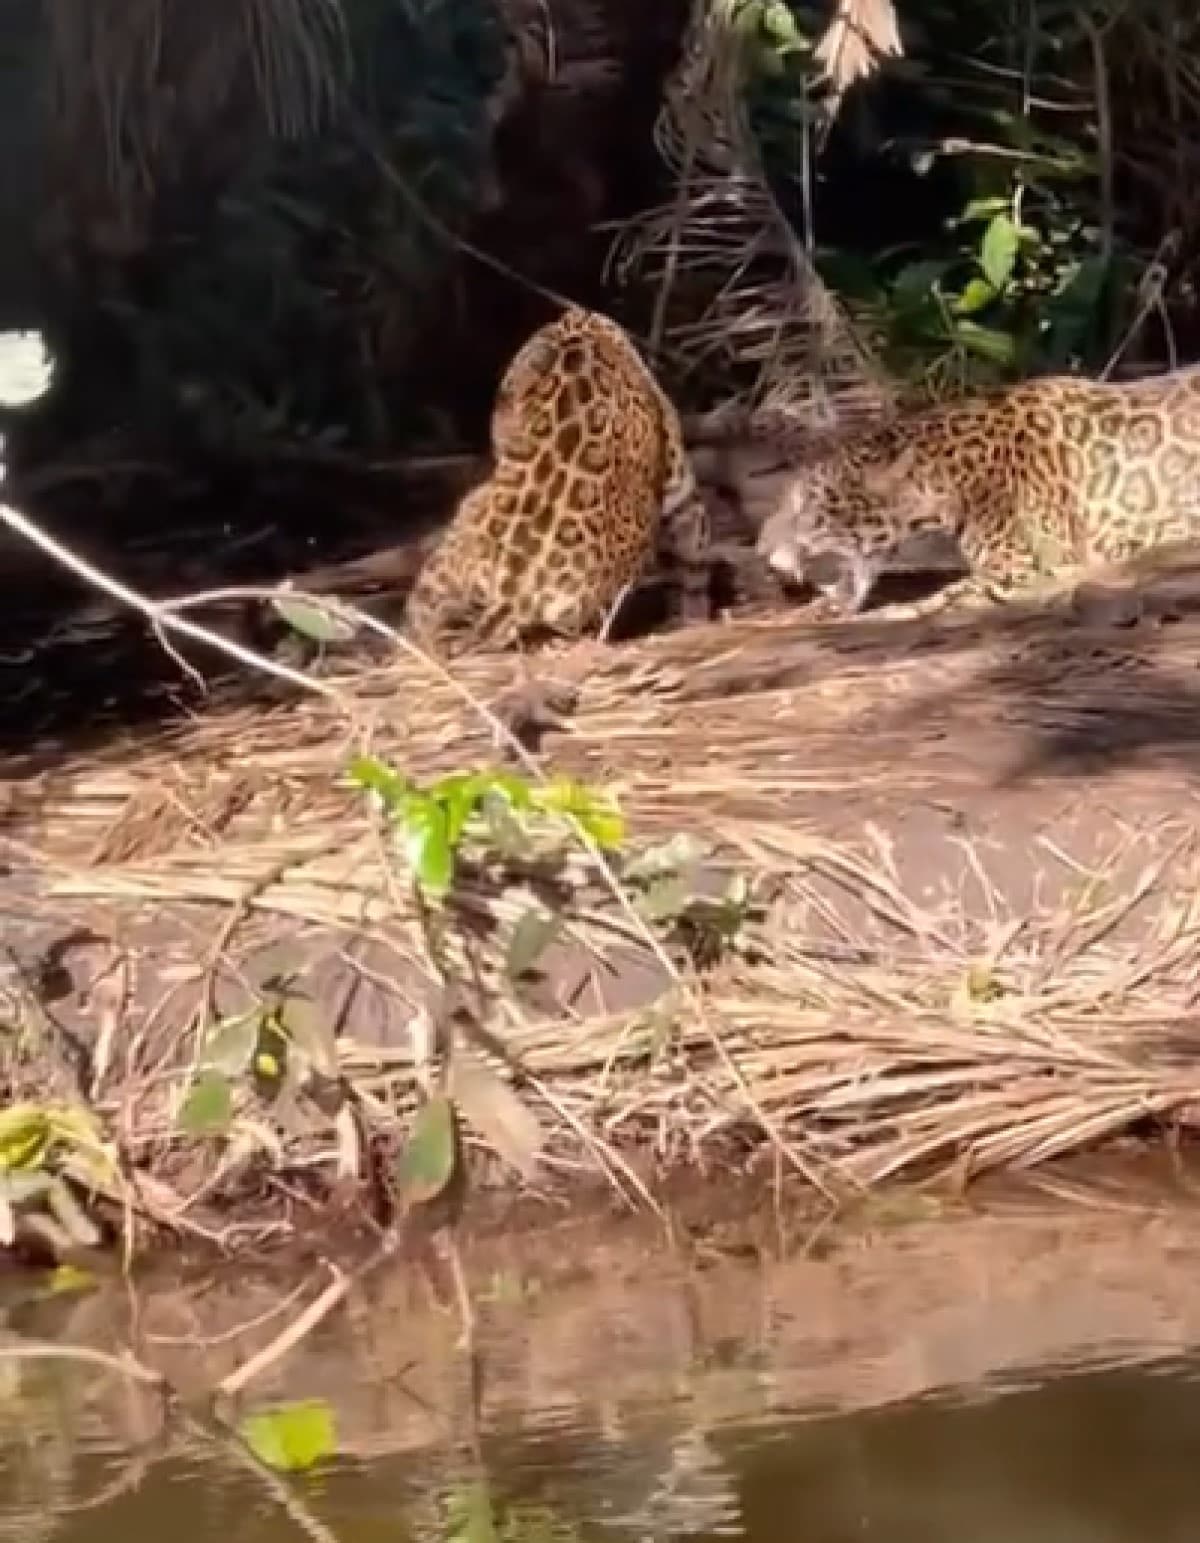 Ao contrário dos leopardos, as onças têm cauda mais curta. Outra diferencia entre eles é o padrão de manchas na pele e pelo maior tamanho.